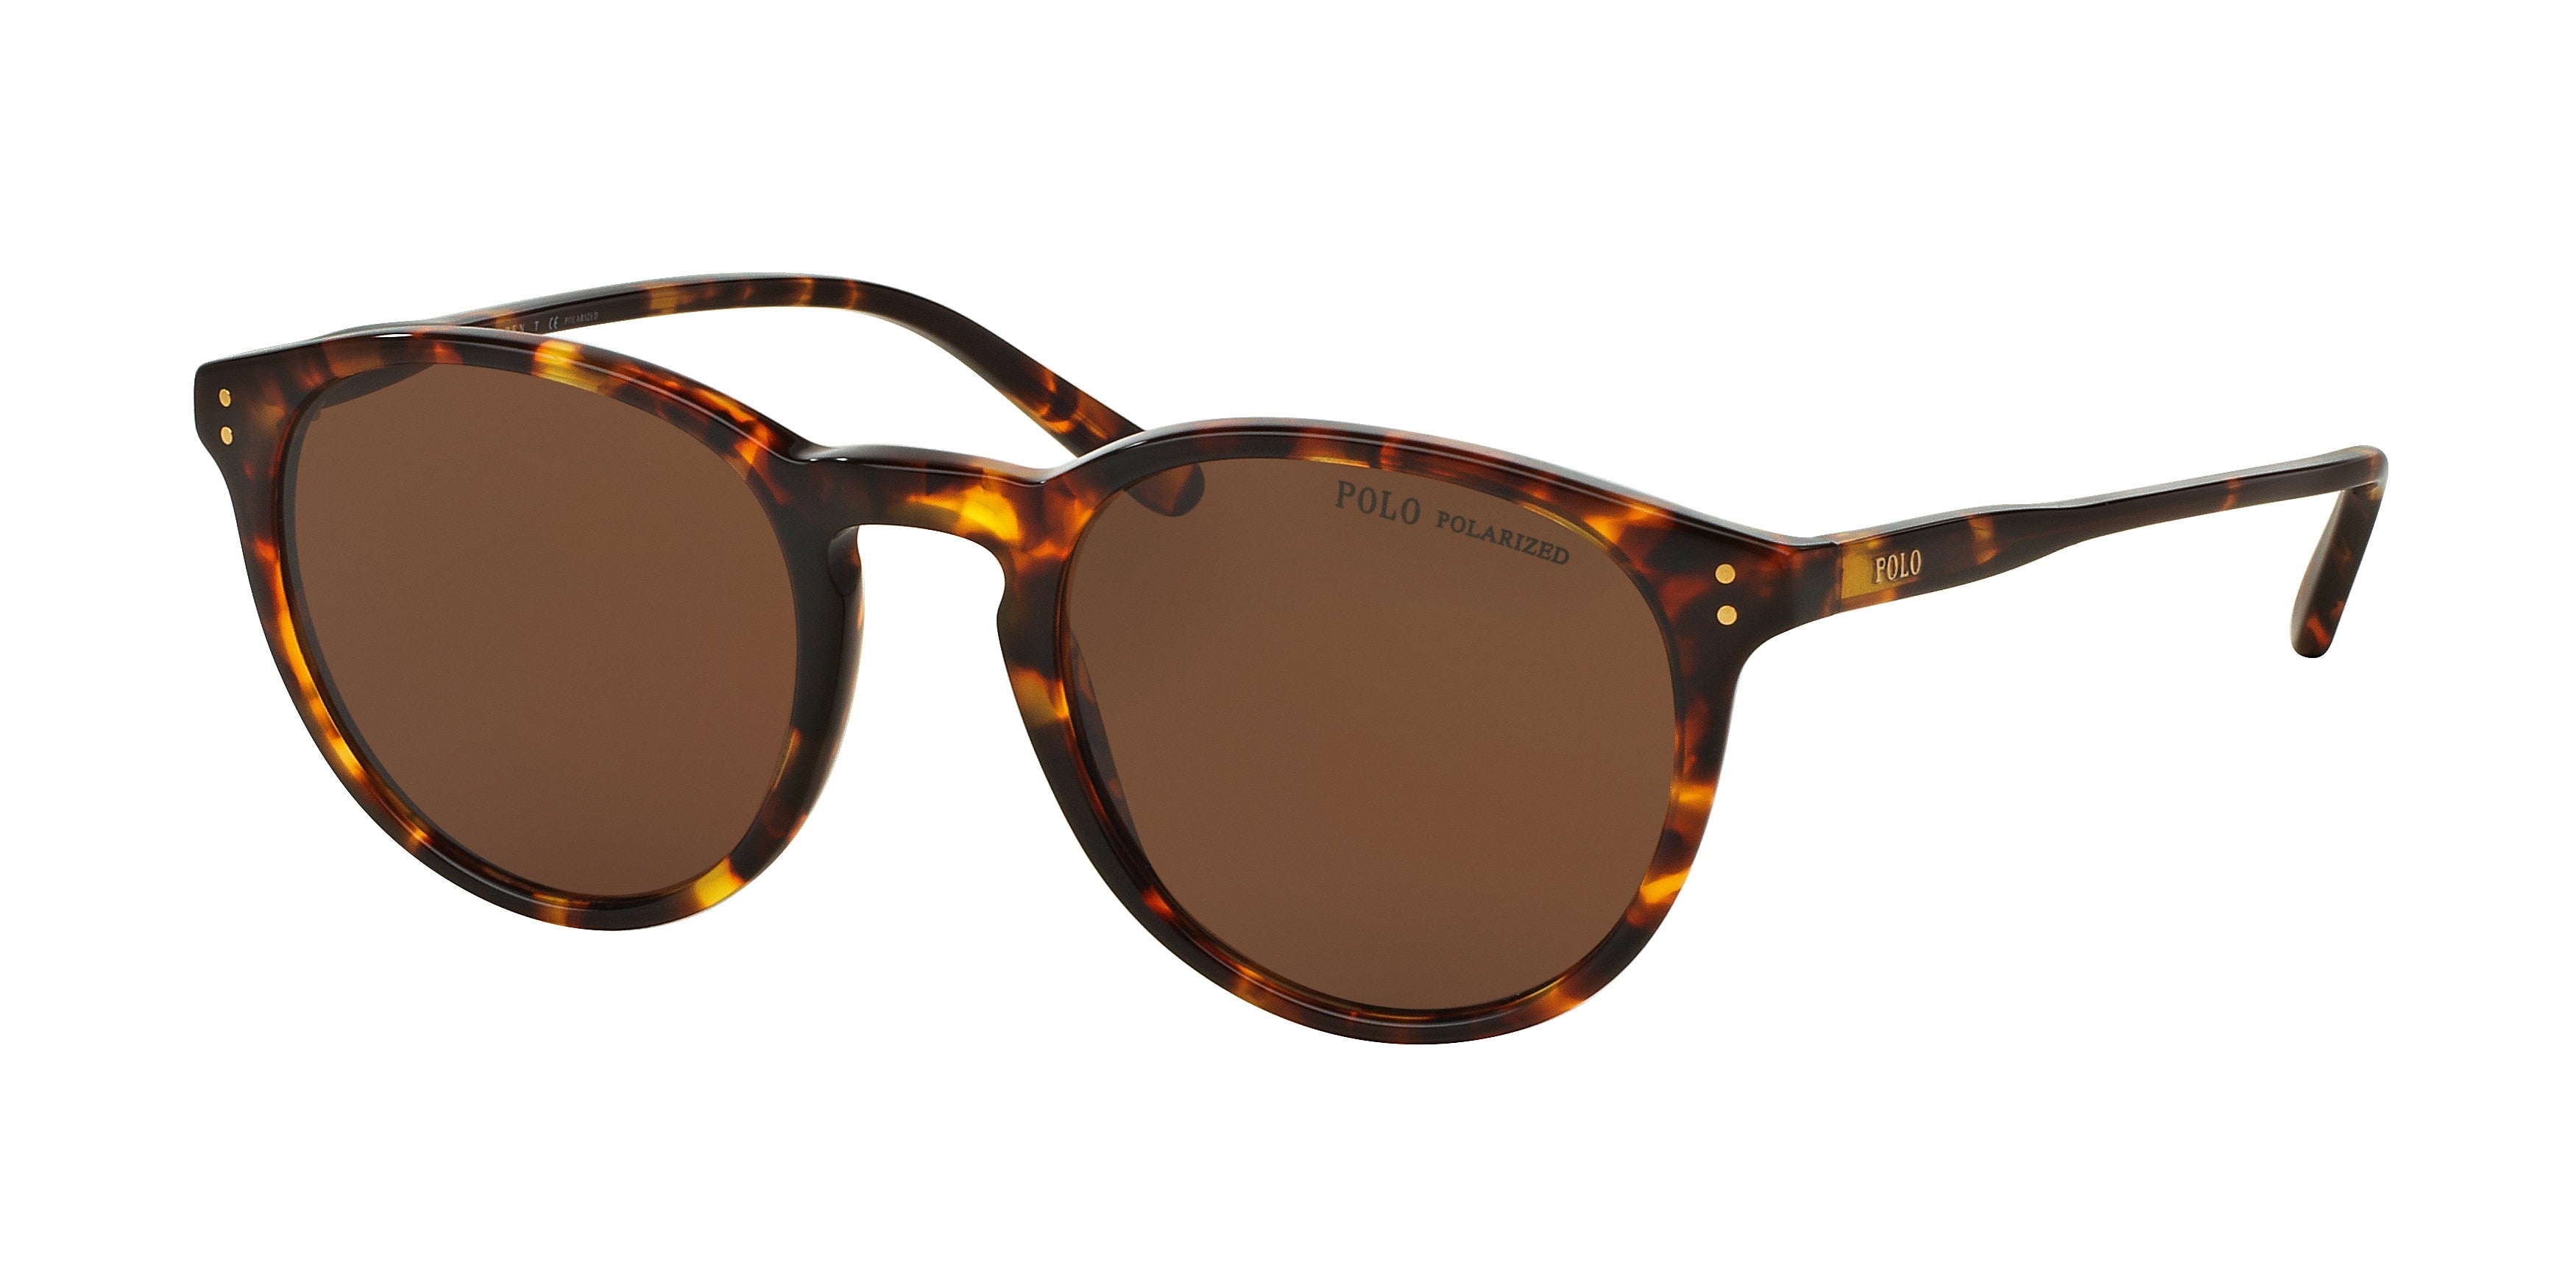 Polo Ralph Lauren Men's Sunglasses on Sale | ShopStyle